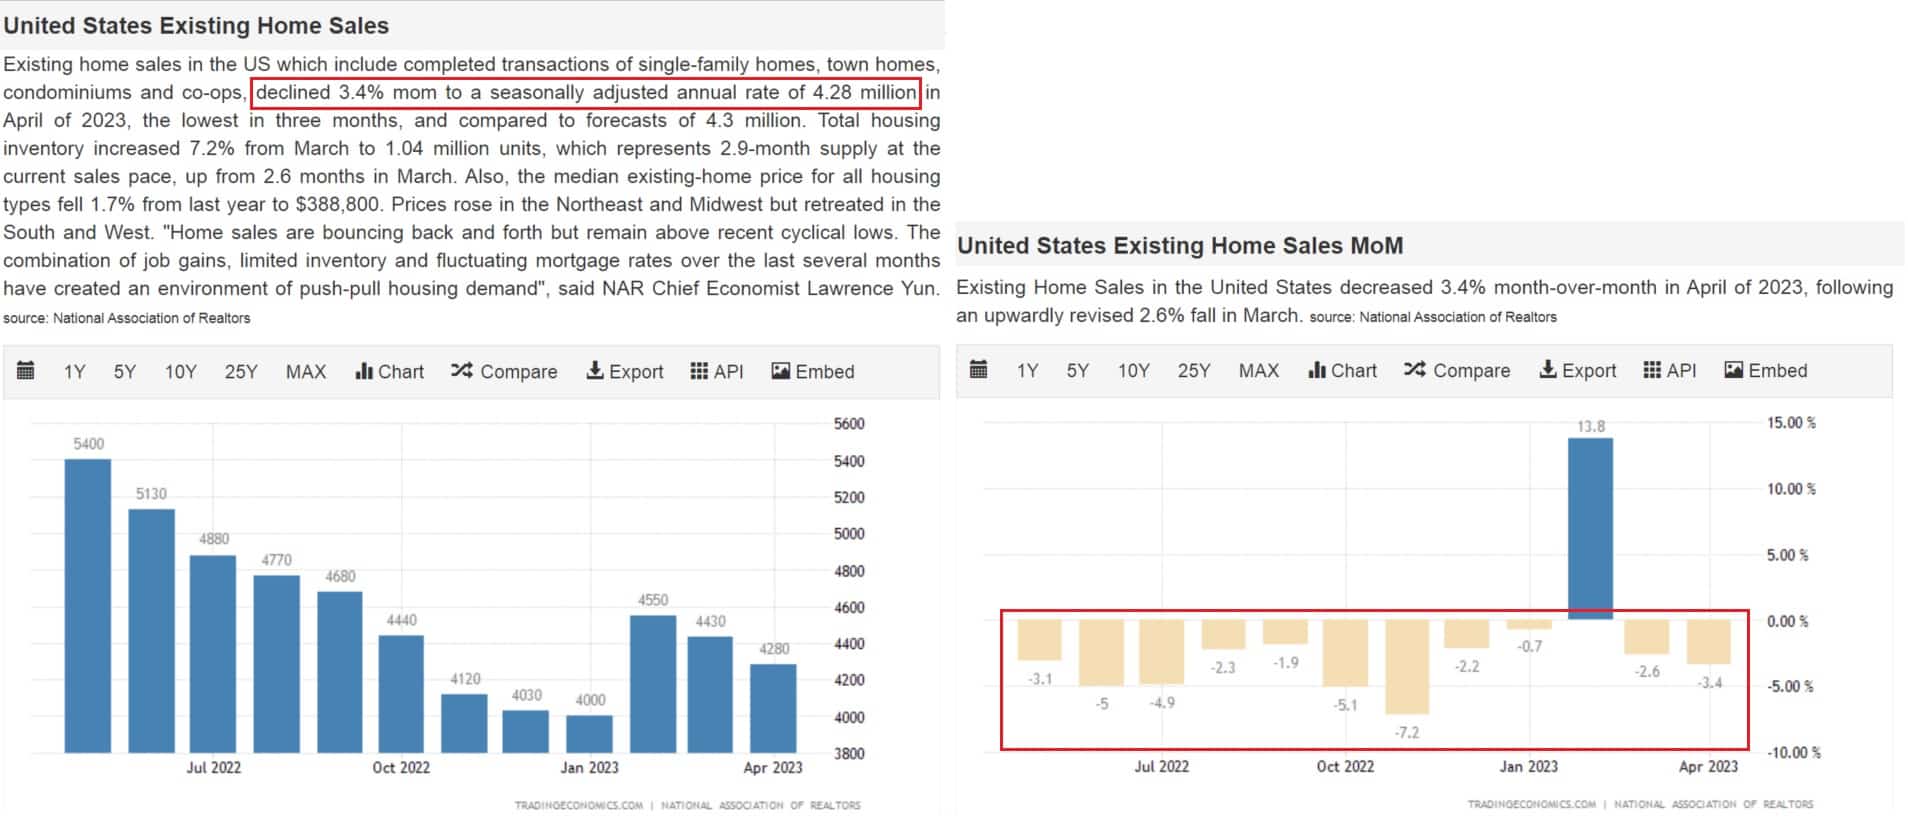 Pokles prodejů existujících domů, zdroj: https://tradingeconomics.com/united-states/existing-home-sales-mom